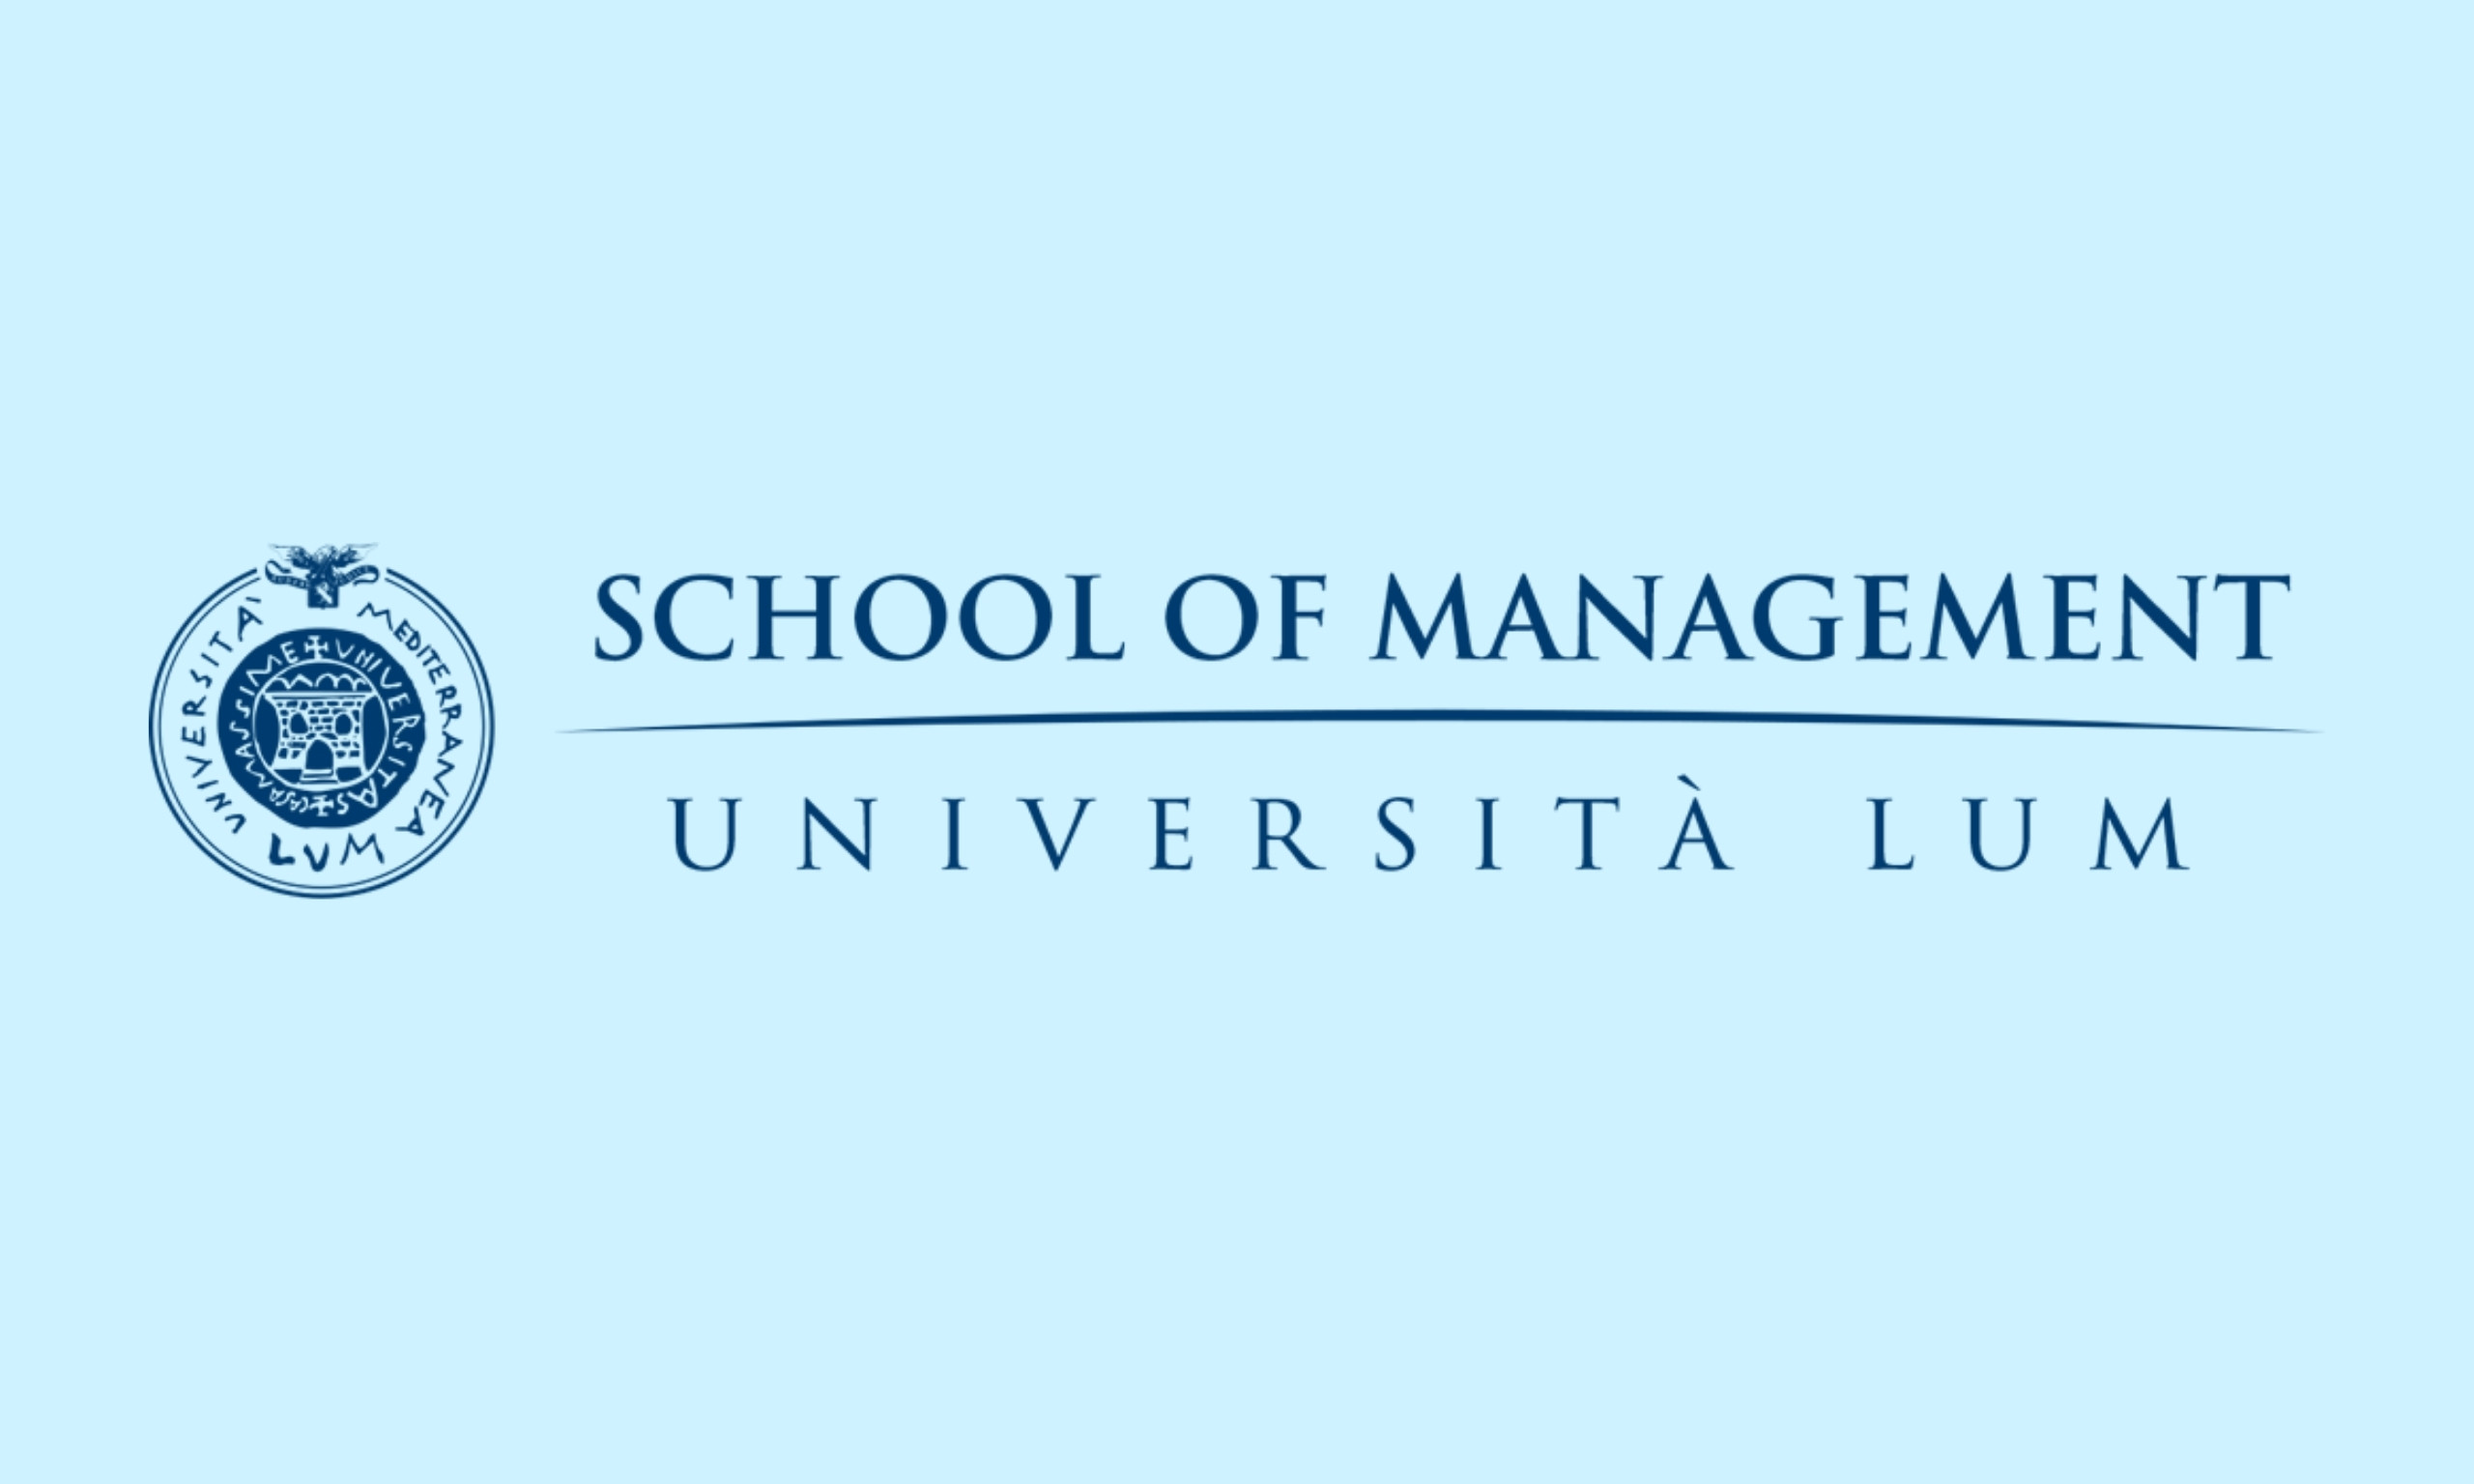 Lum – School of Management e PNRR: Una risorsa per la formazione